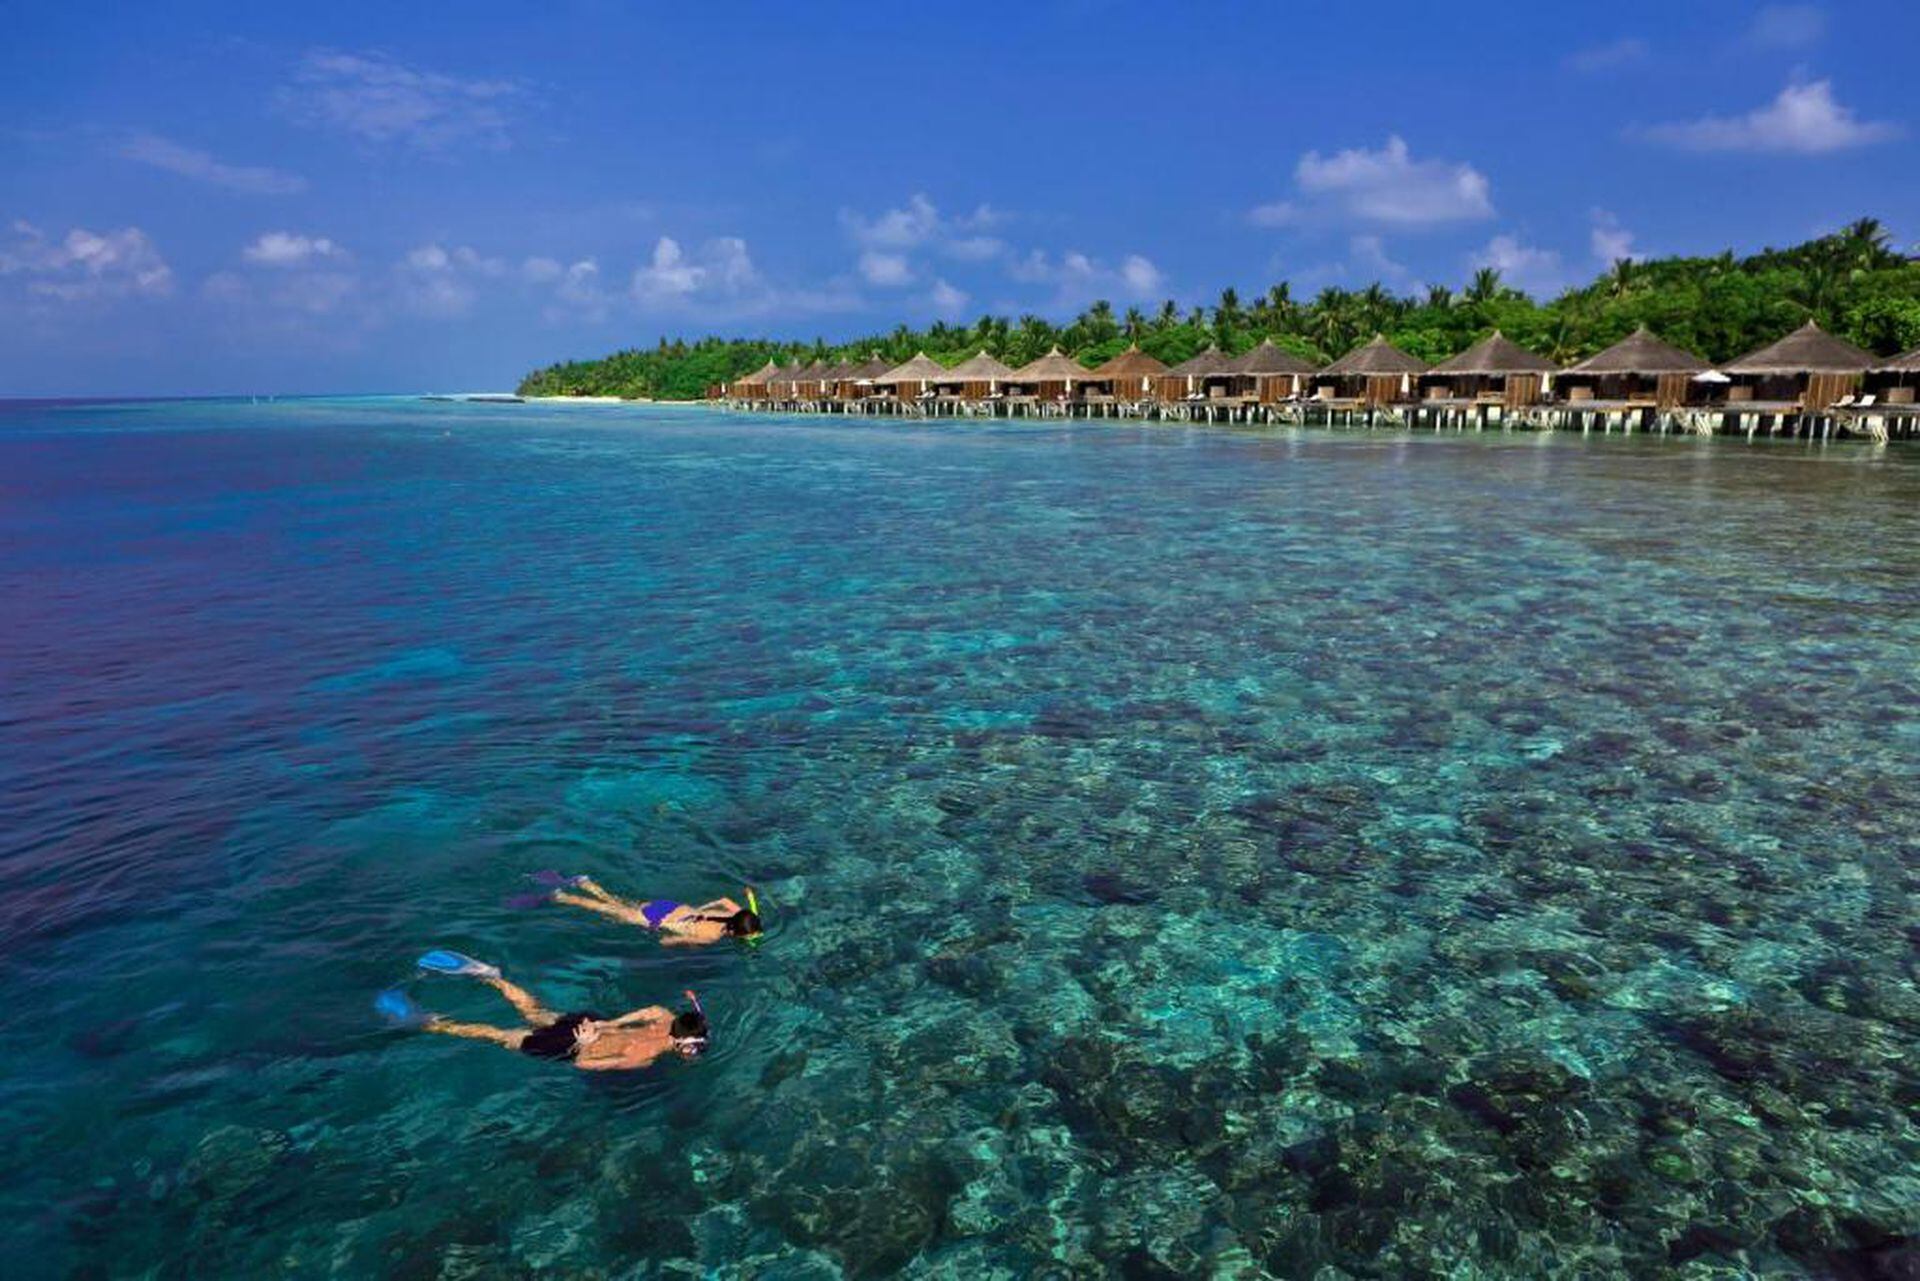 Uno de los mejores programas en Maldivas es el buceo y el snorkeling. Kuramathi Resort posee, además, un submarino.